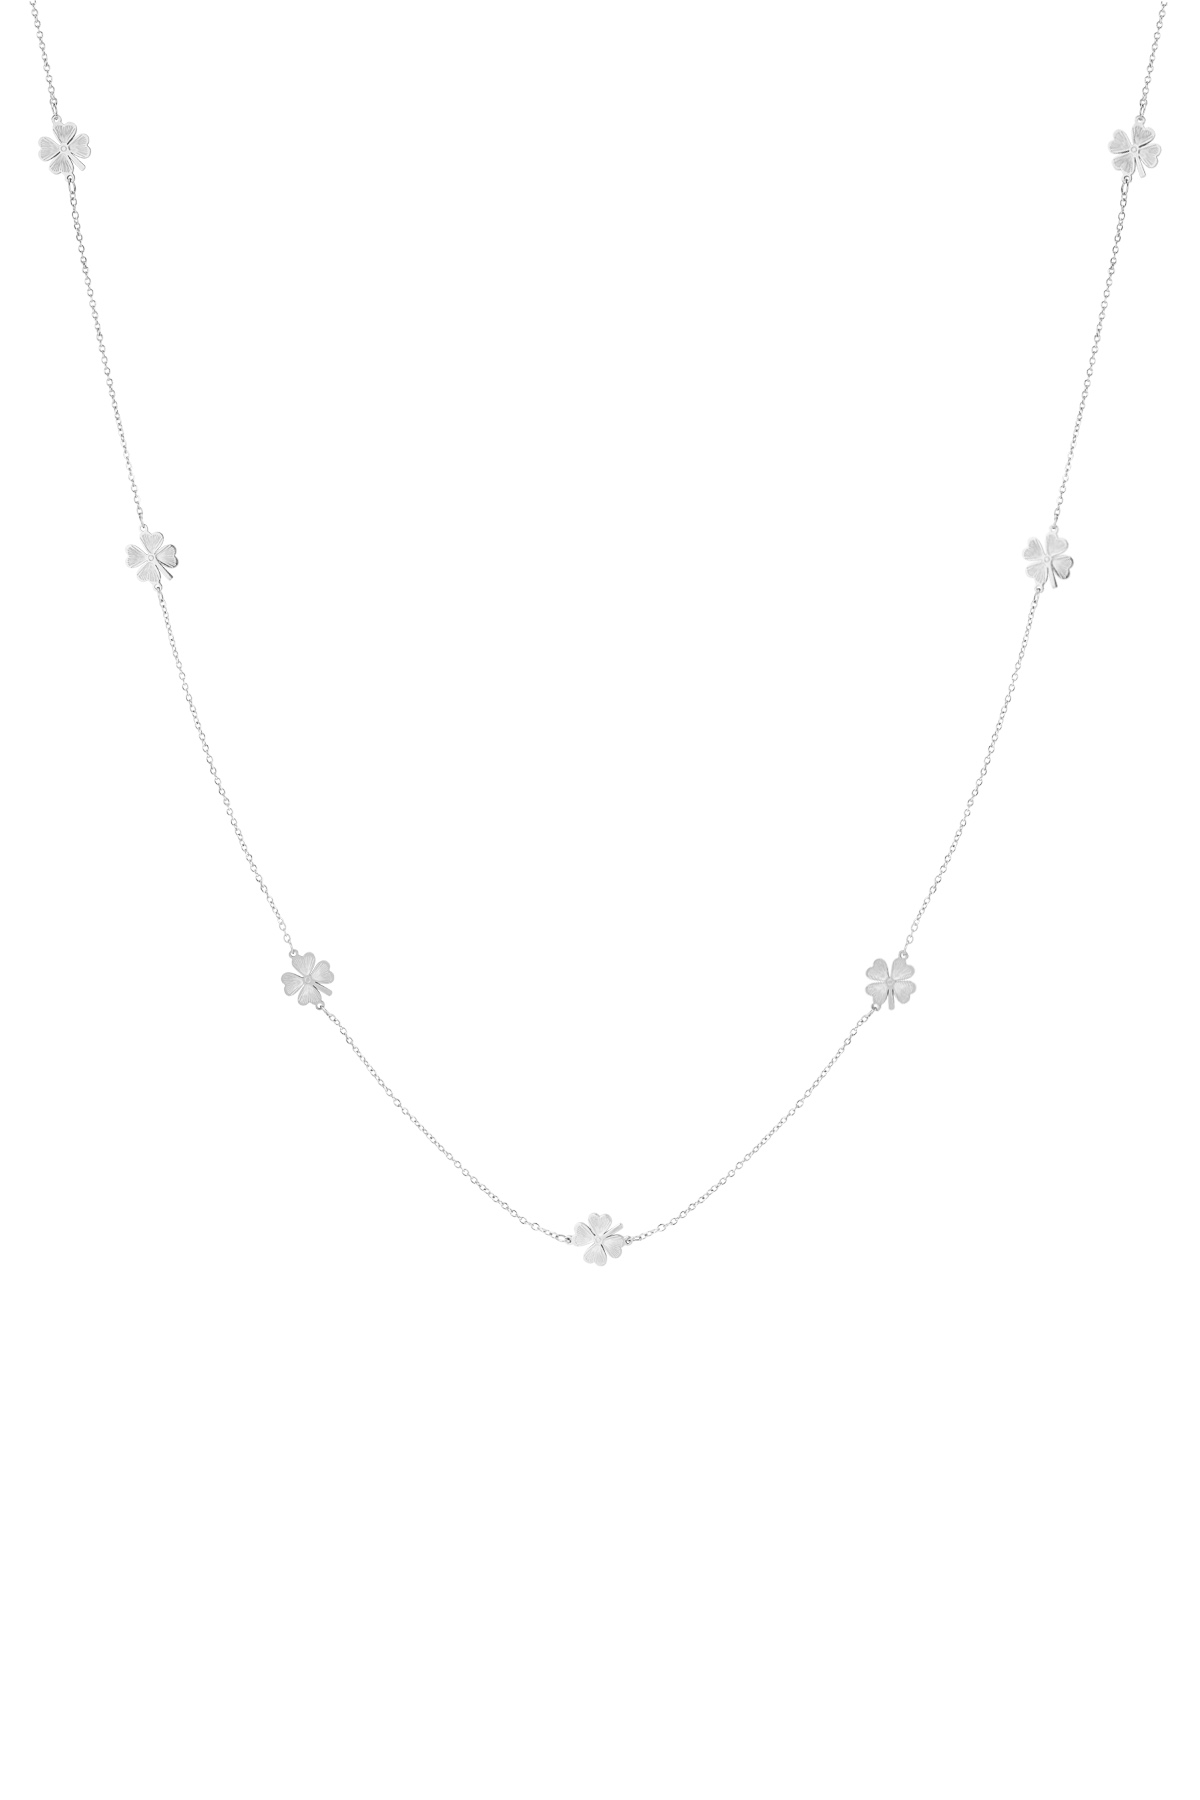 Lange Kleeblatt-Halskette – Silber 